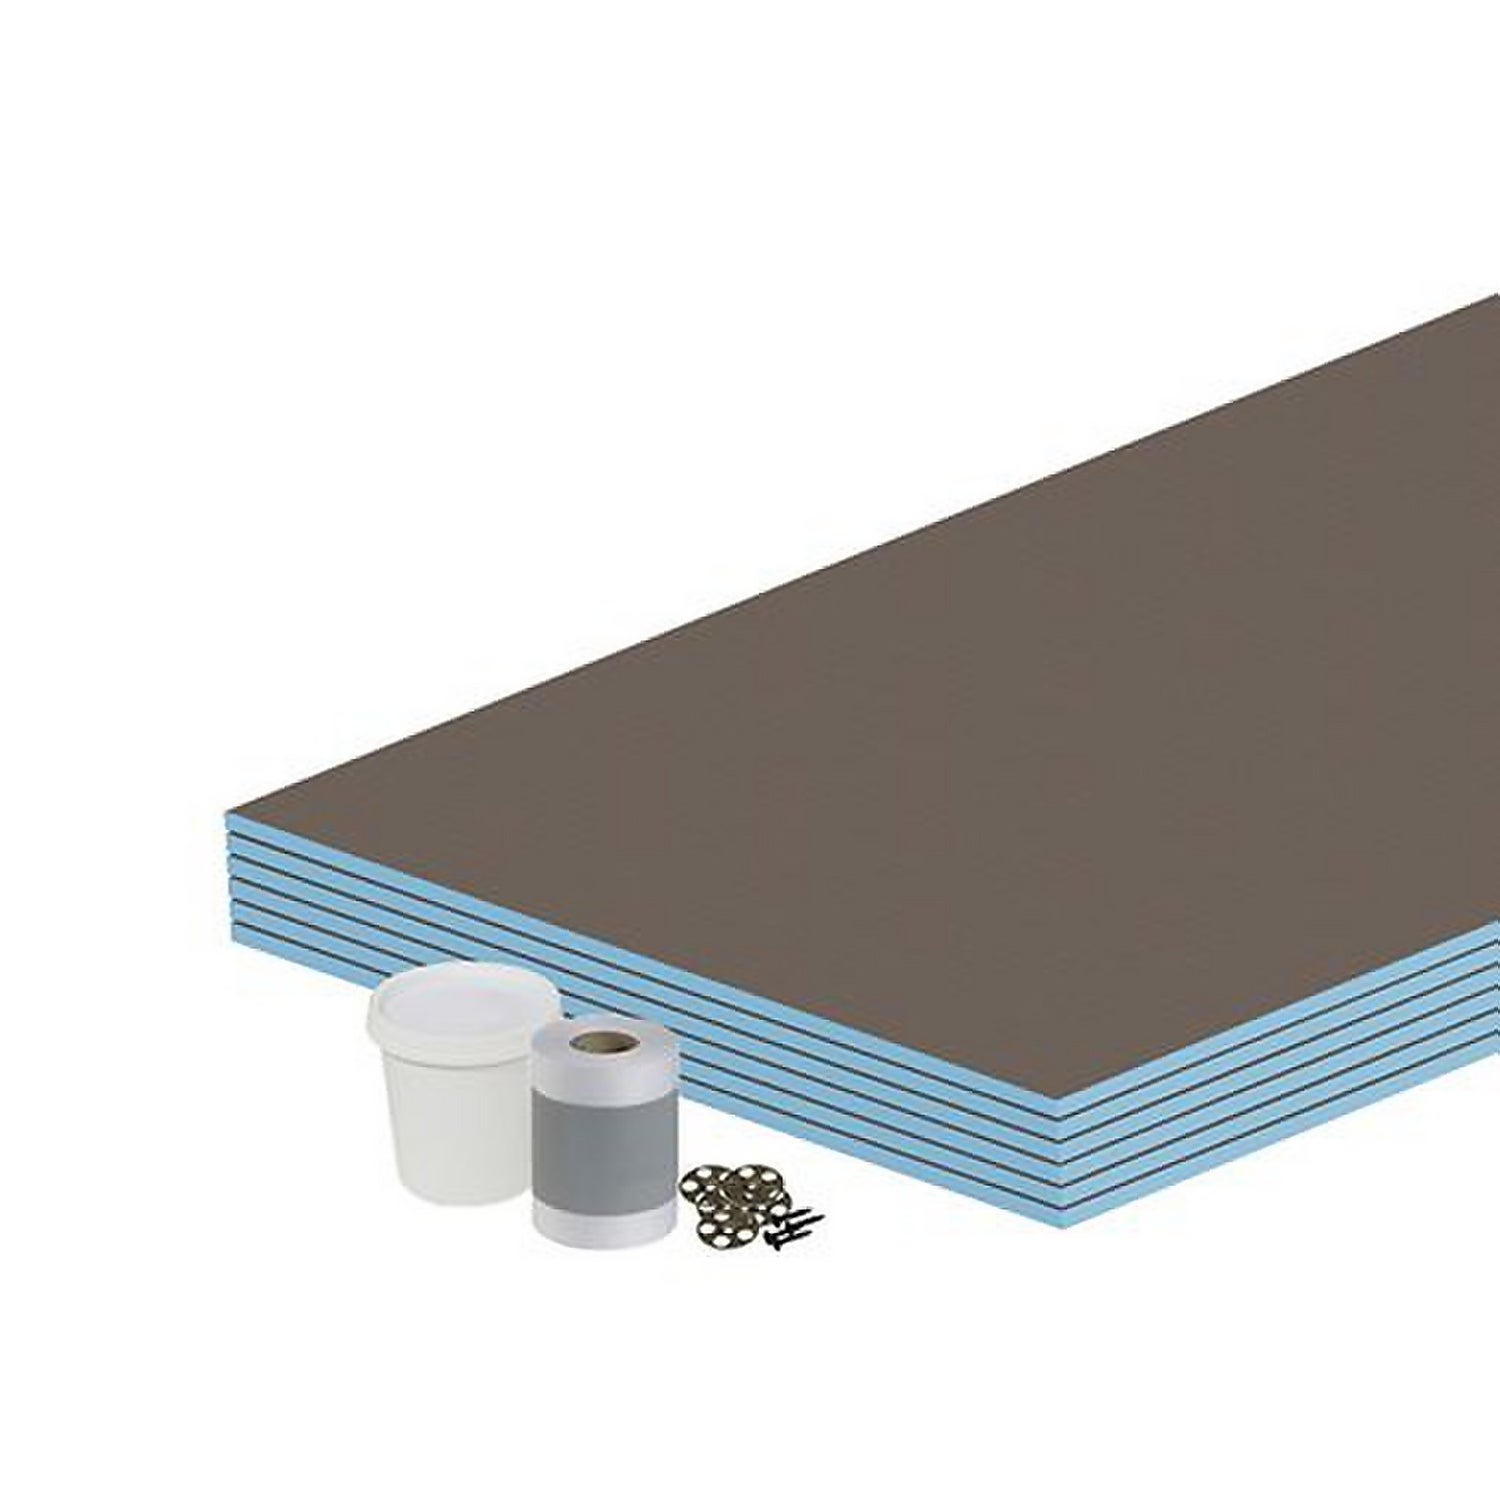 Wall Kit 12mm Tile Backer Board 4.32m2 for Wet room